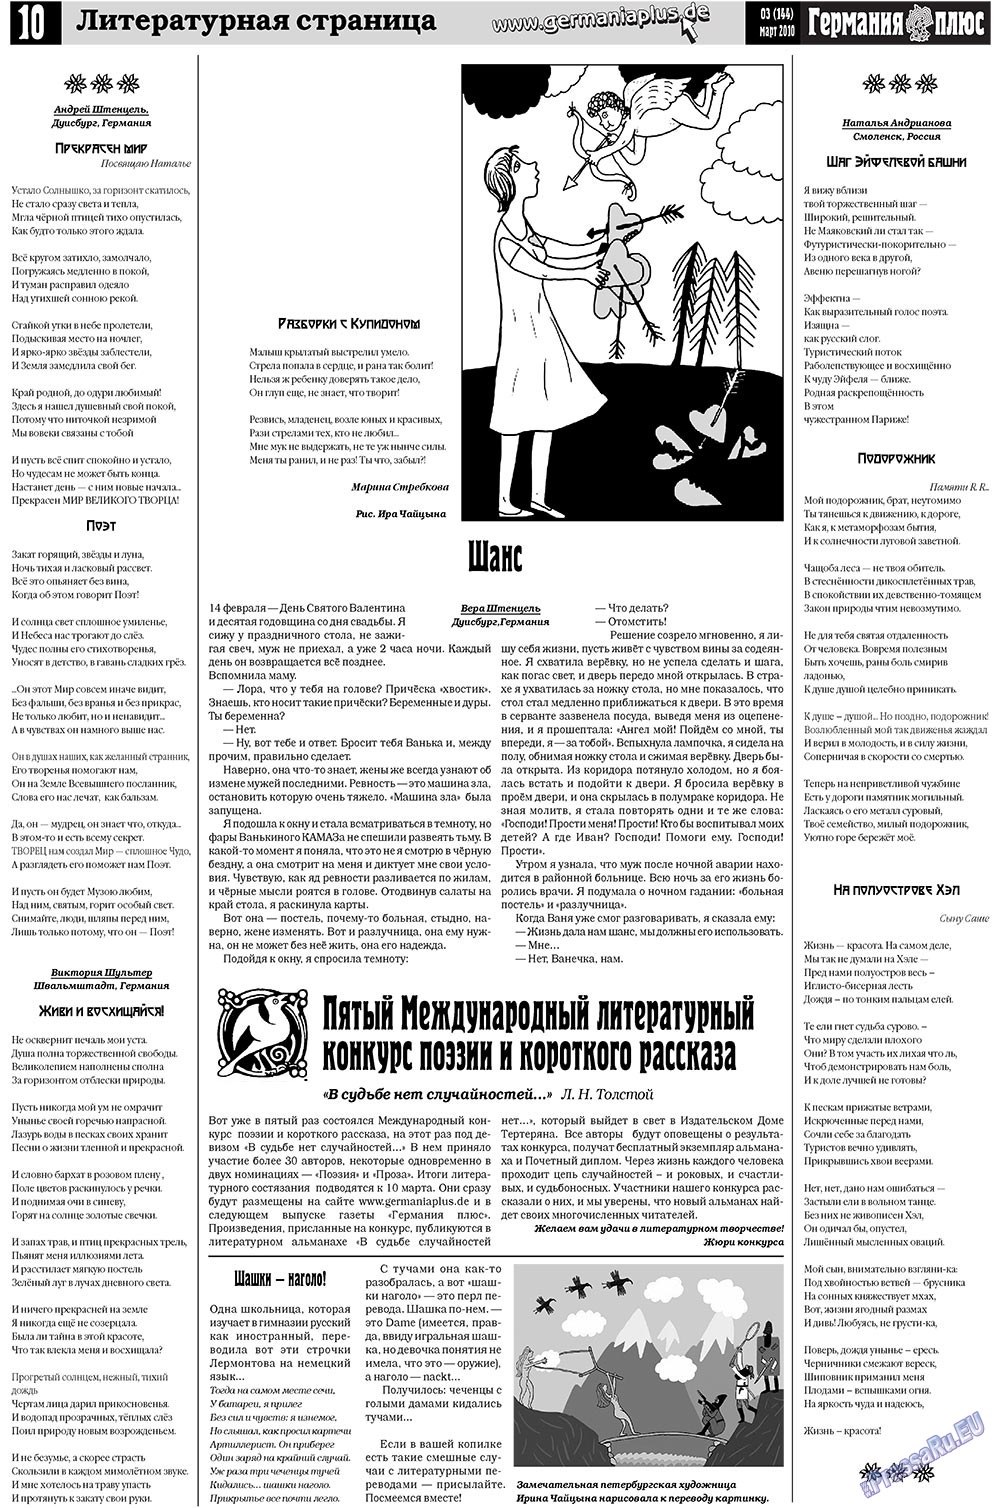 Германия плюс, газета. 2010 №3 стр.10